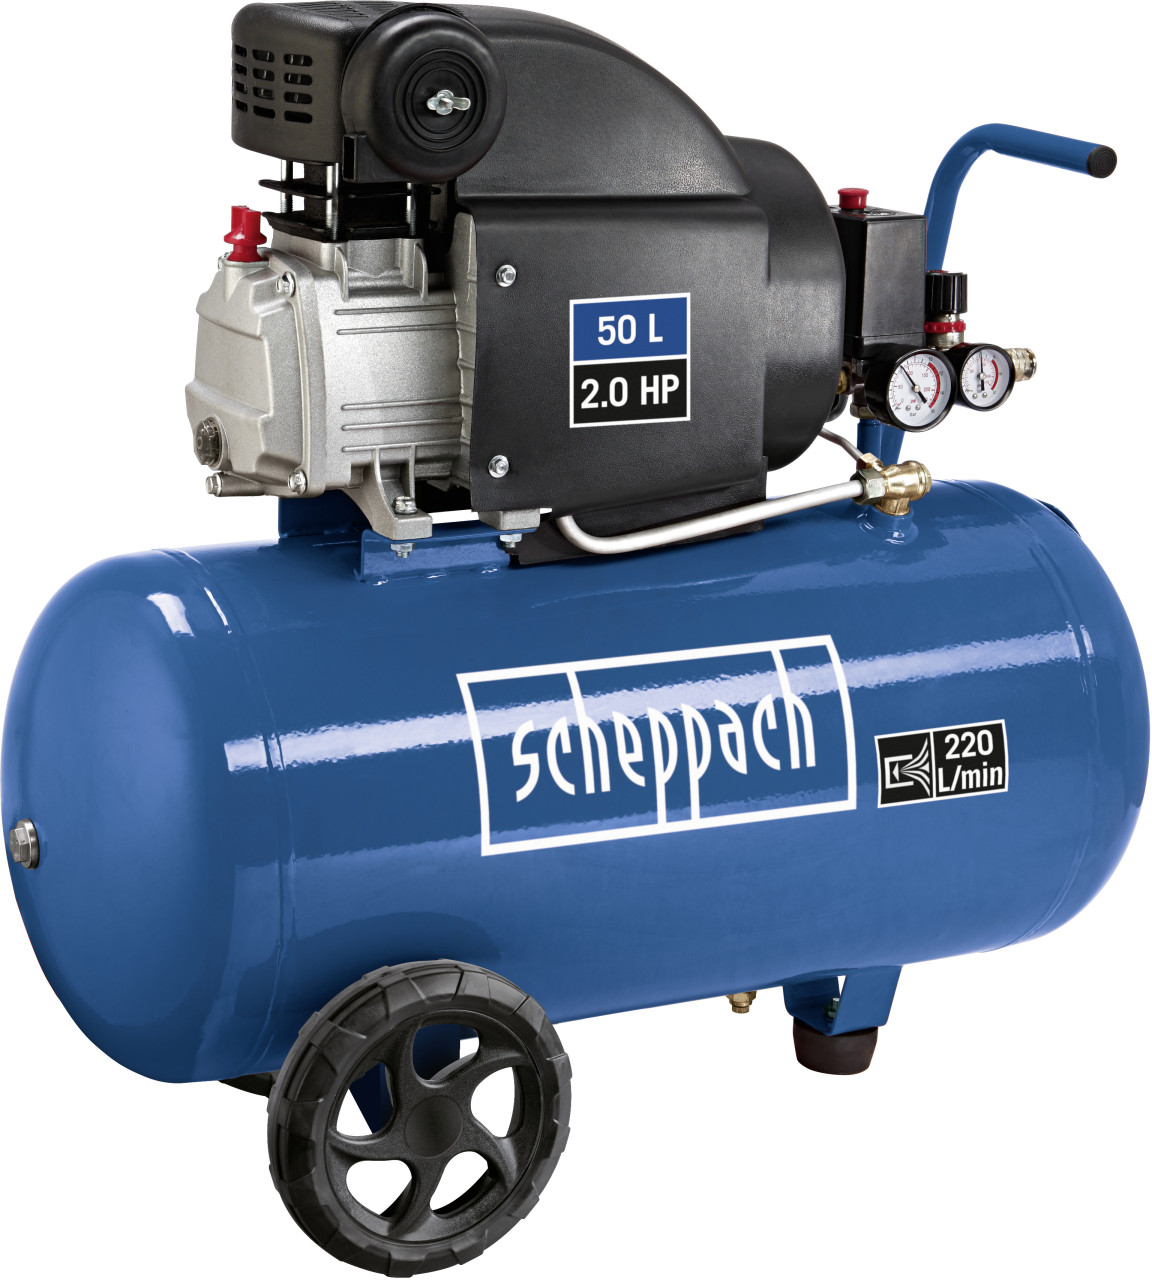 Scheppach Kompressor HC 54 1500 W 8 bar 50 l 220 l/min von Scheppach